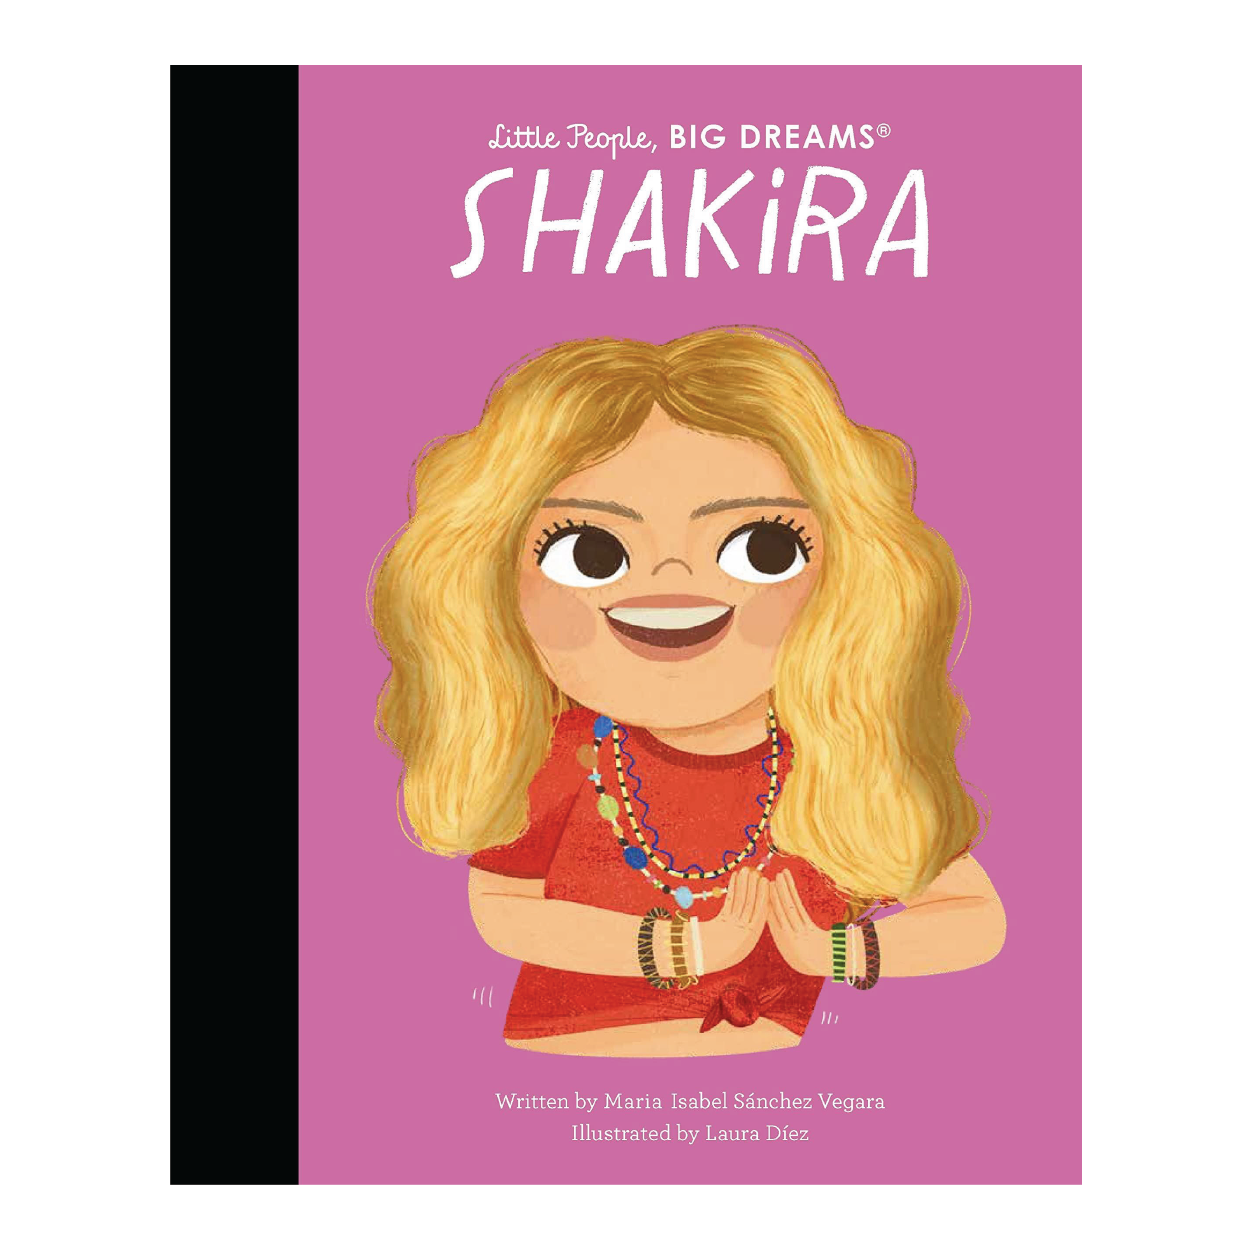 Little People, Big Dreams: Shakira